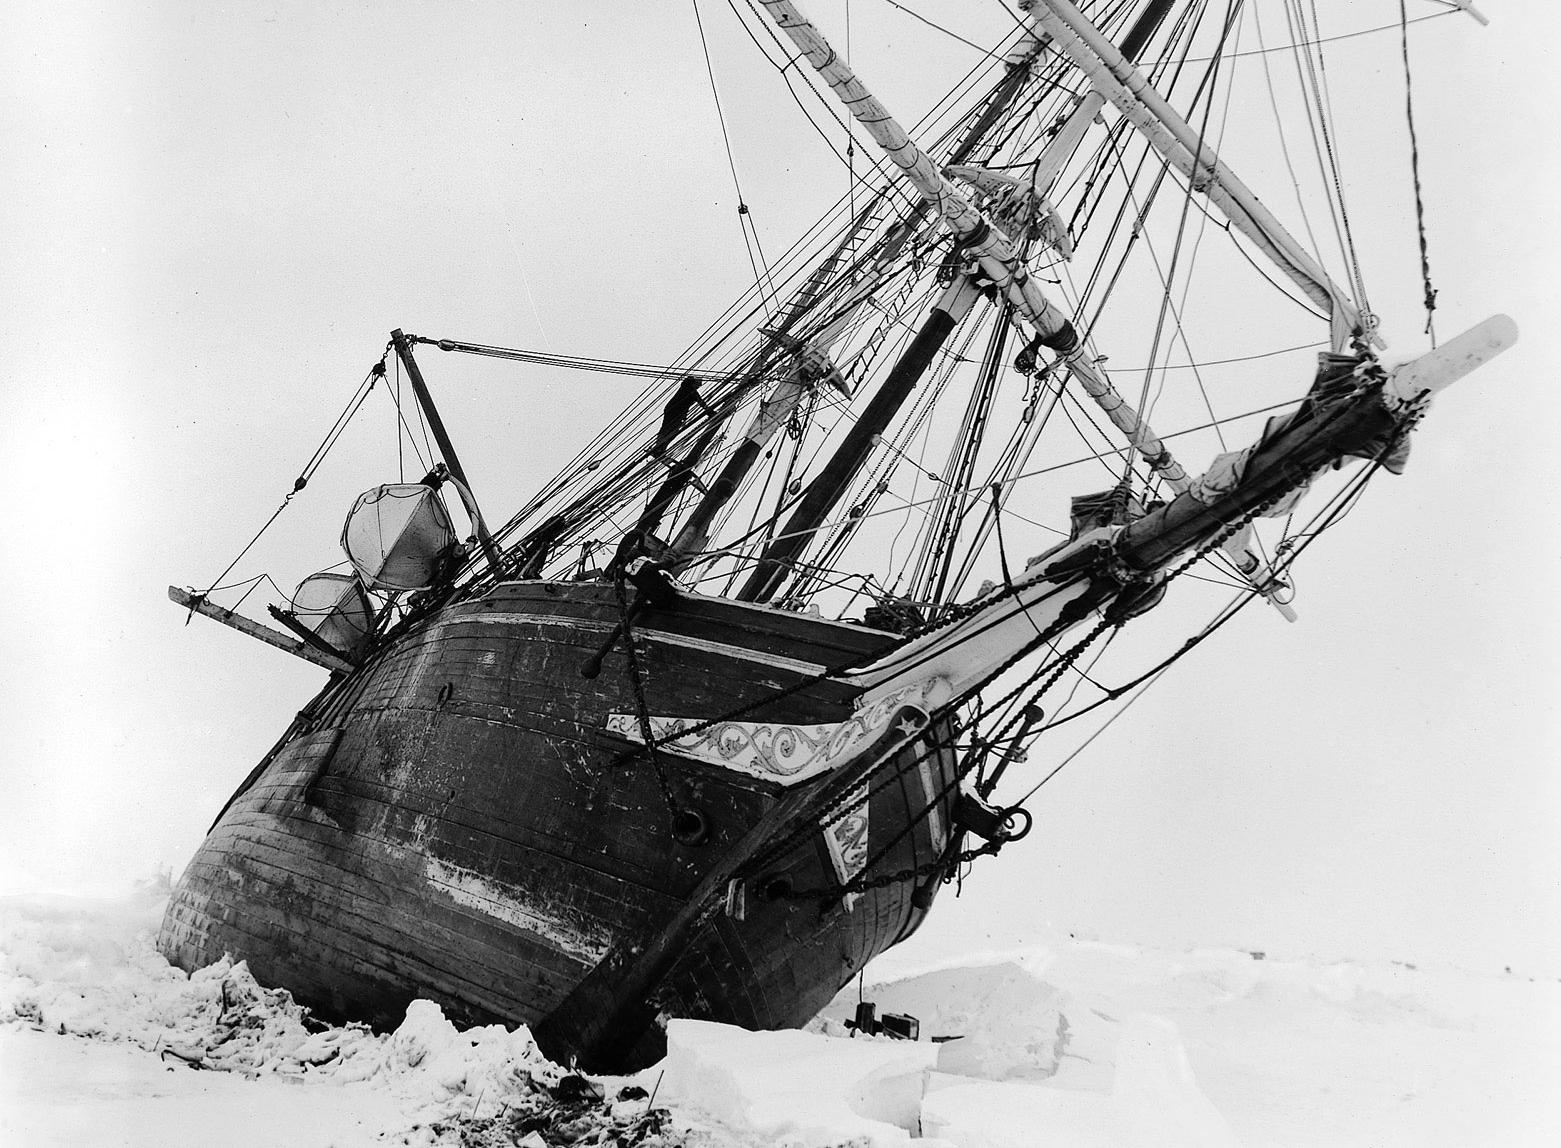 Endurance nådde inte ens Antarktis utan fastnade omgående i packisen. I februari 1915 blev man tvungen att överge skeppet.